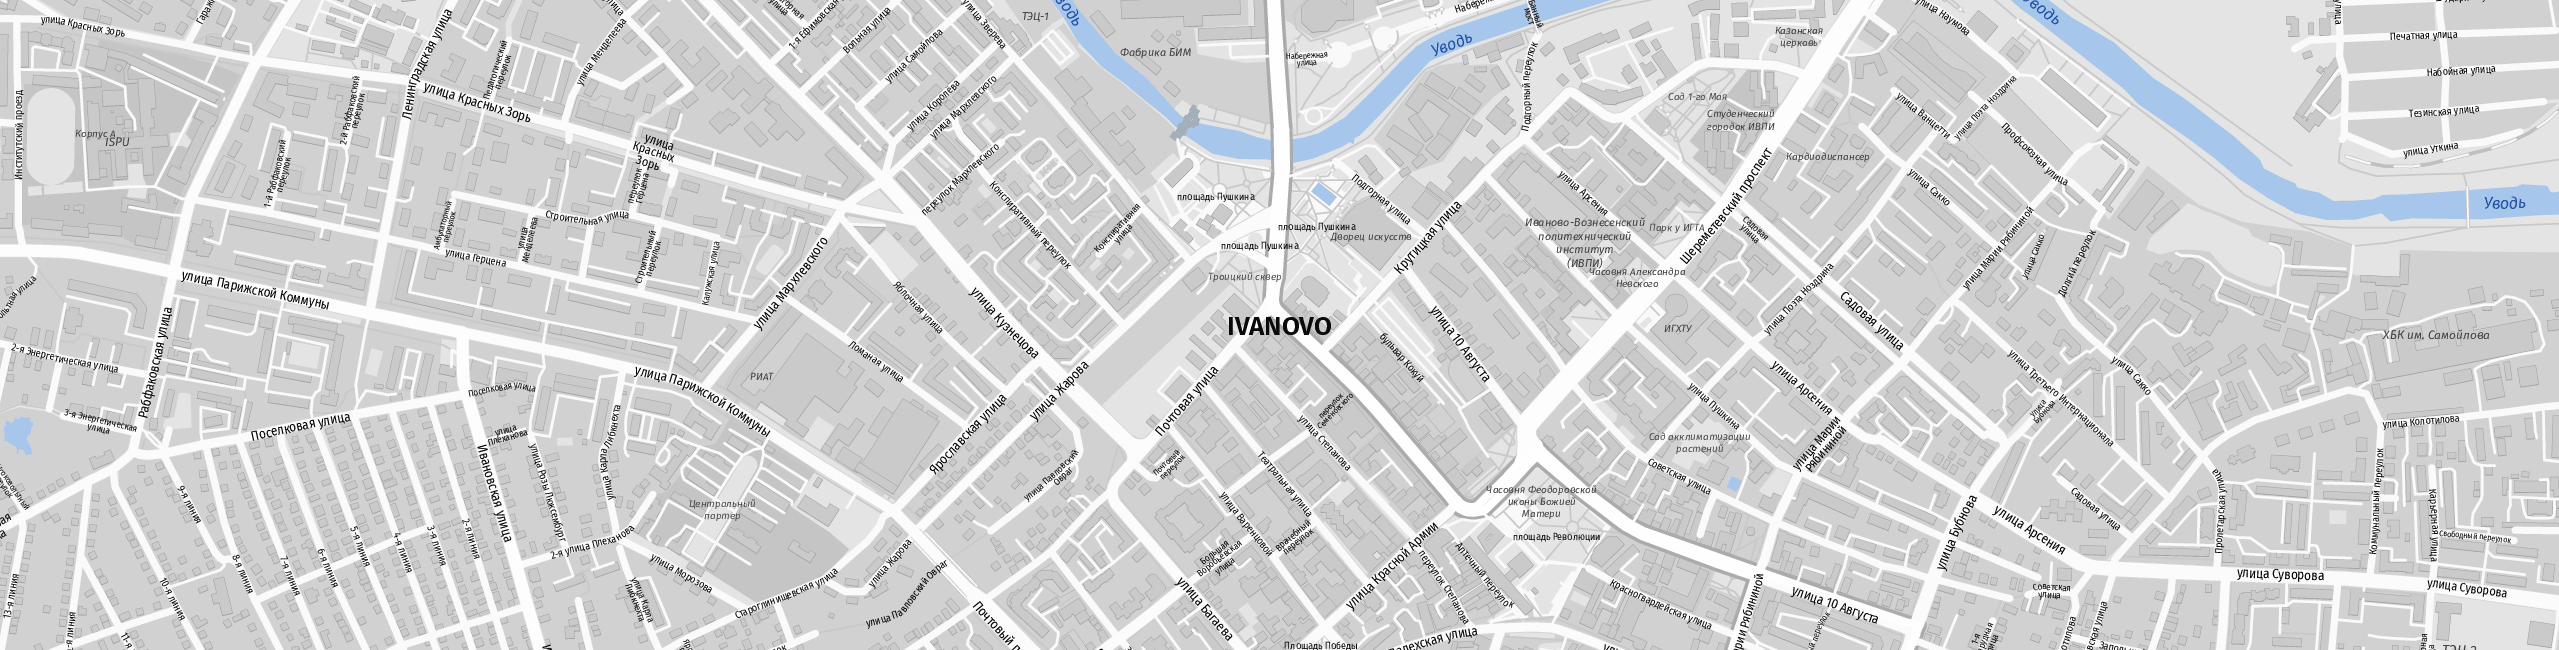 Stadtplan Ivanovo zum Downloaden.